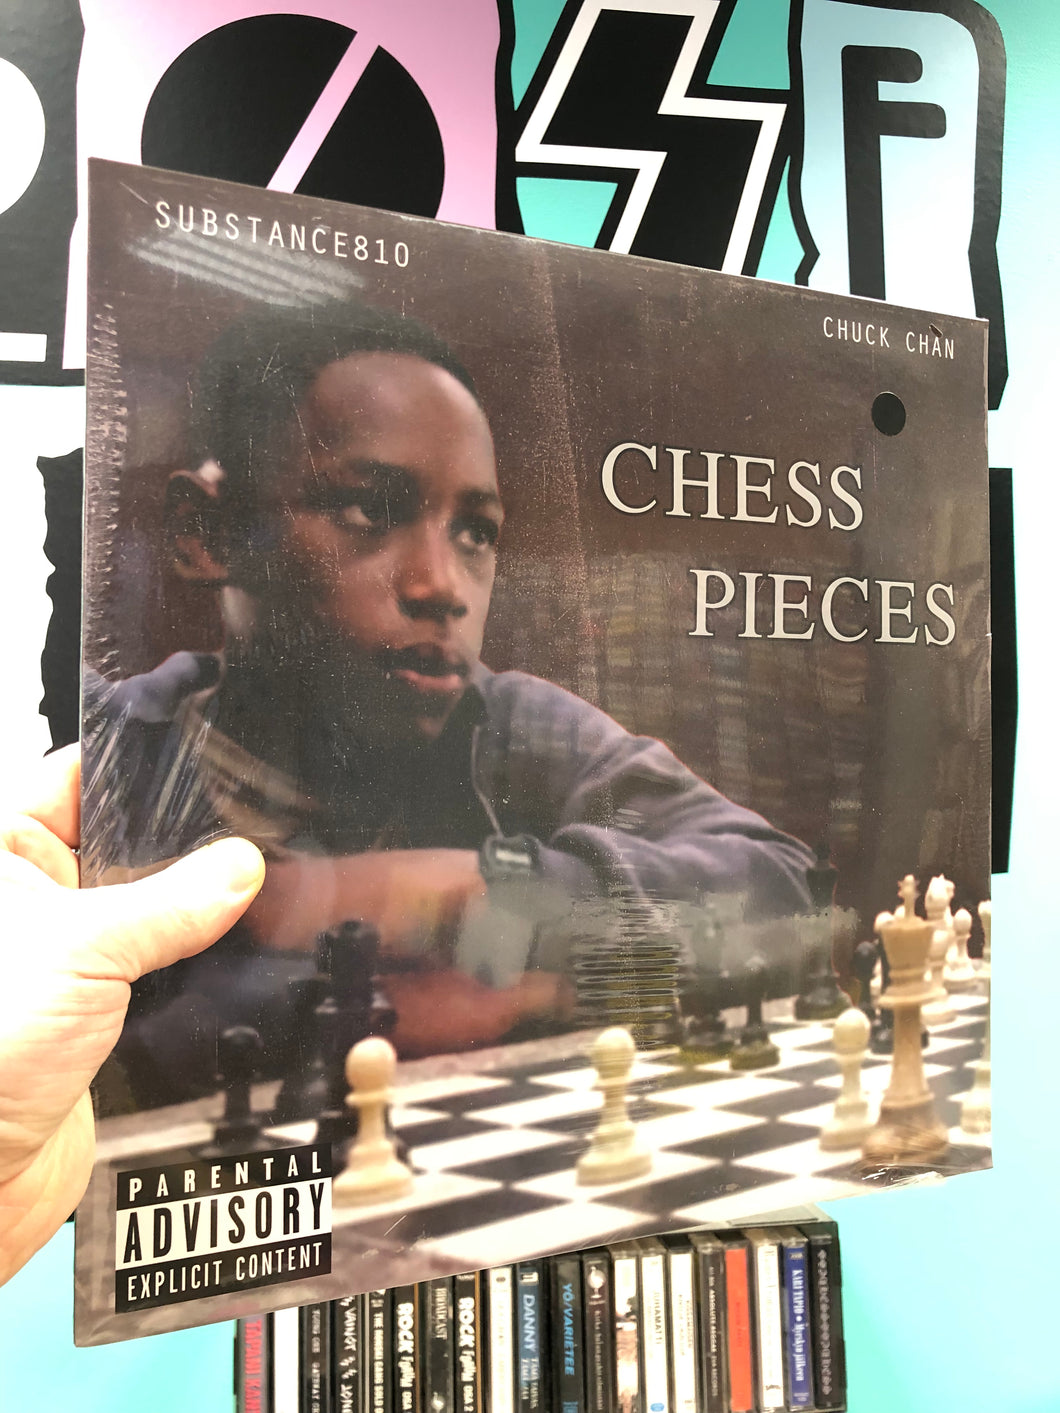 Substance810 & Chuck Chan: Chess Pieces, Belgium 2021